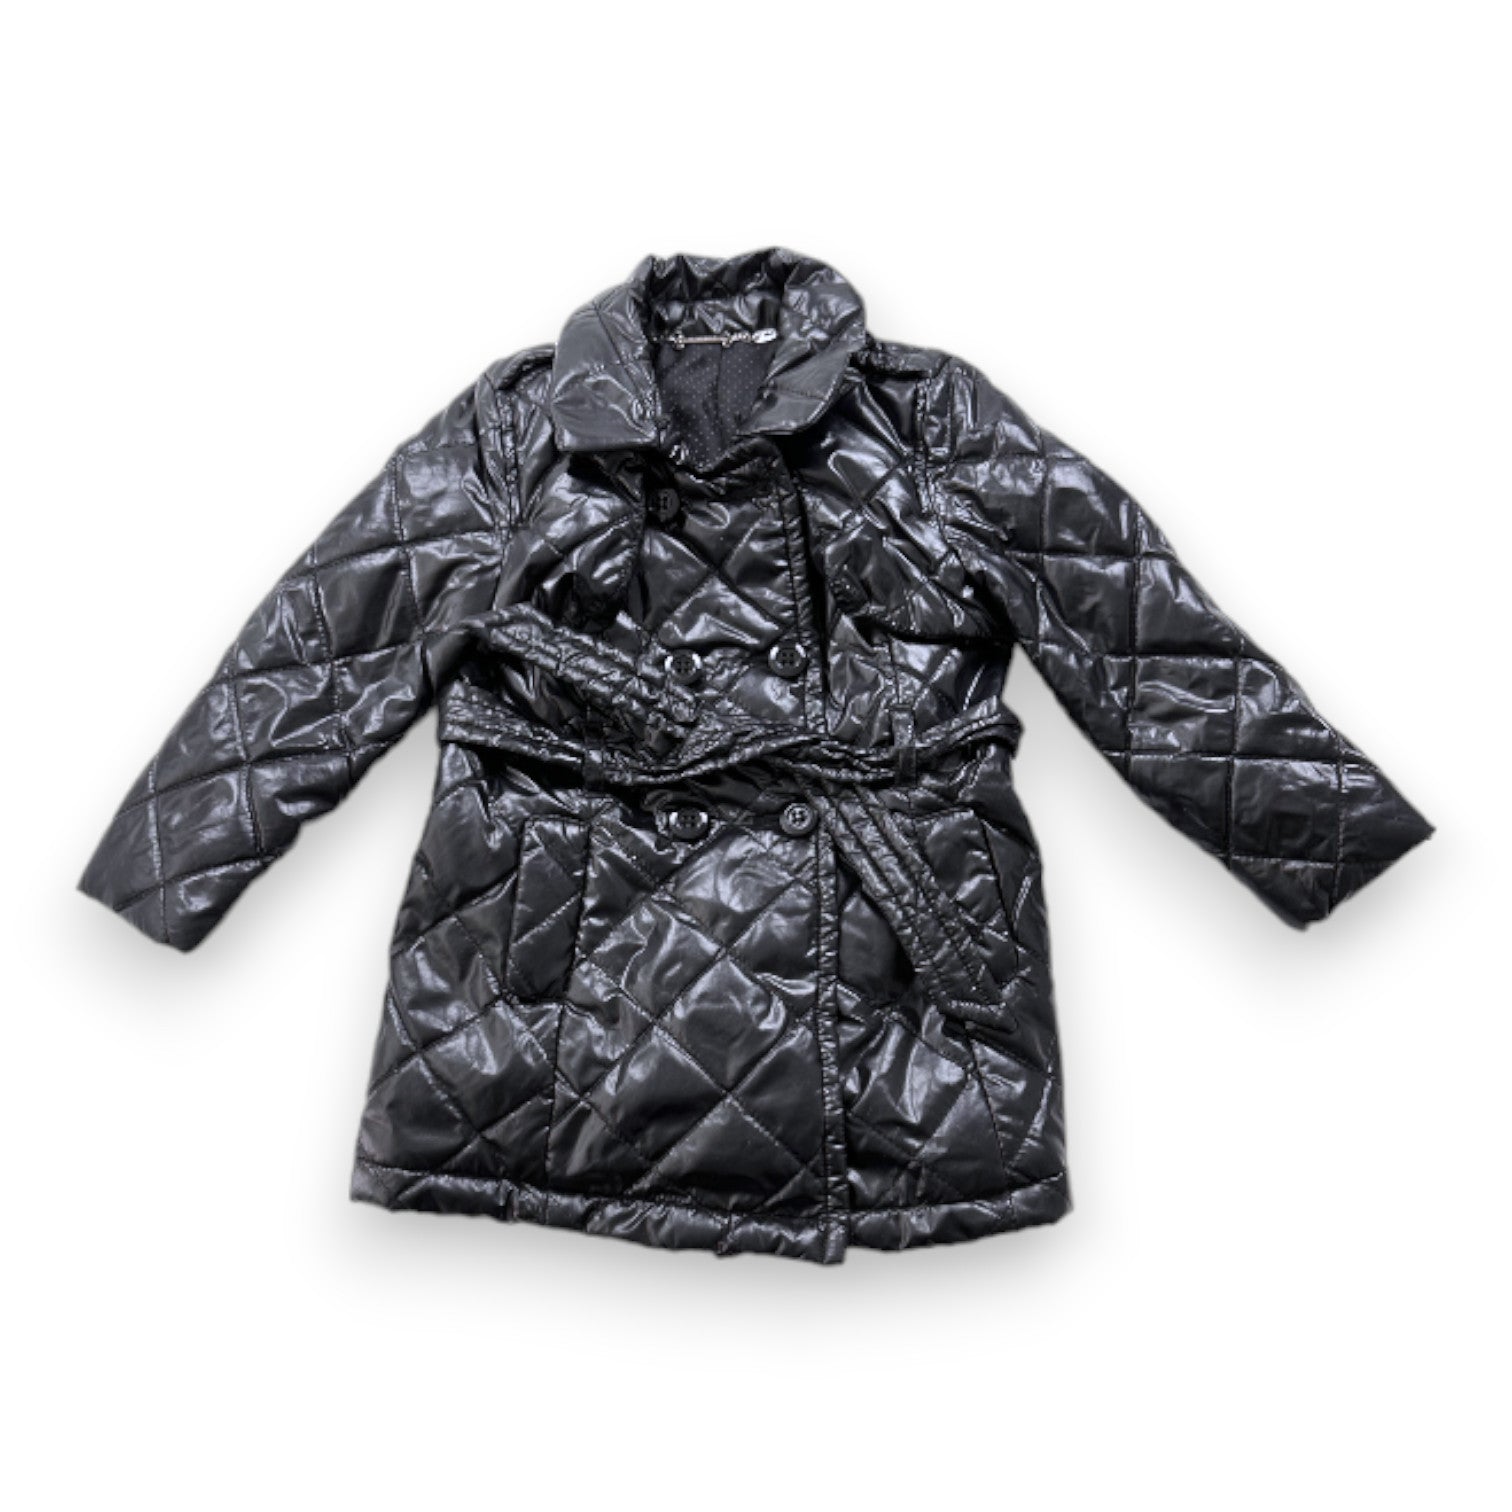 MICROBE - Manteau doudoune noire - 3 ans